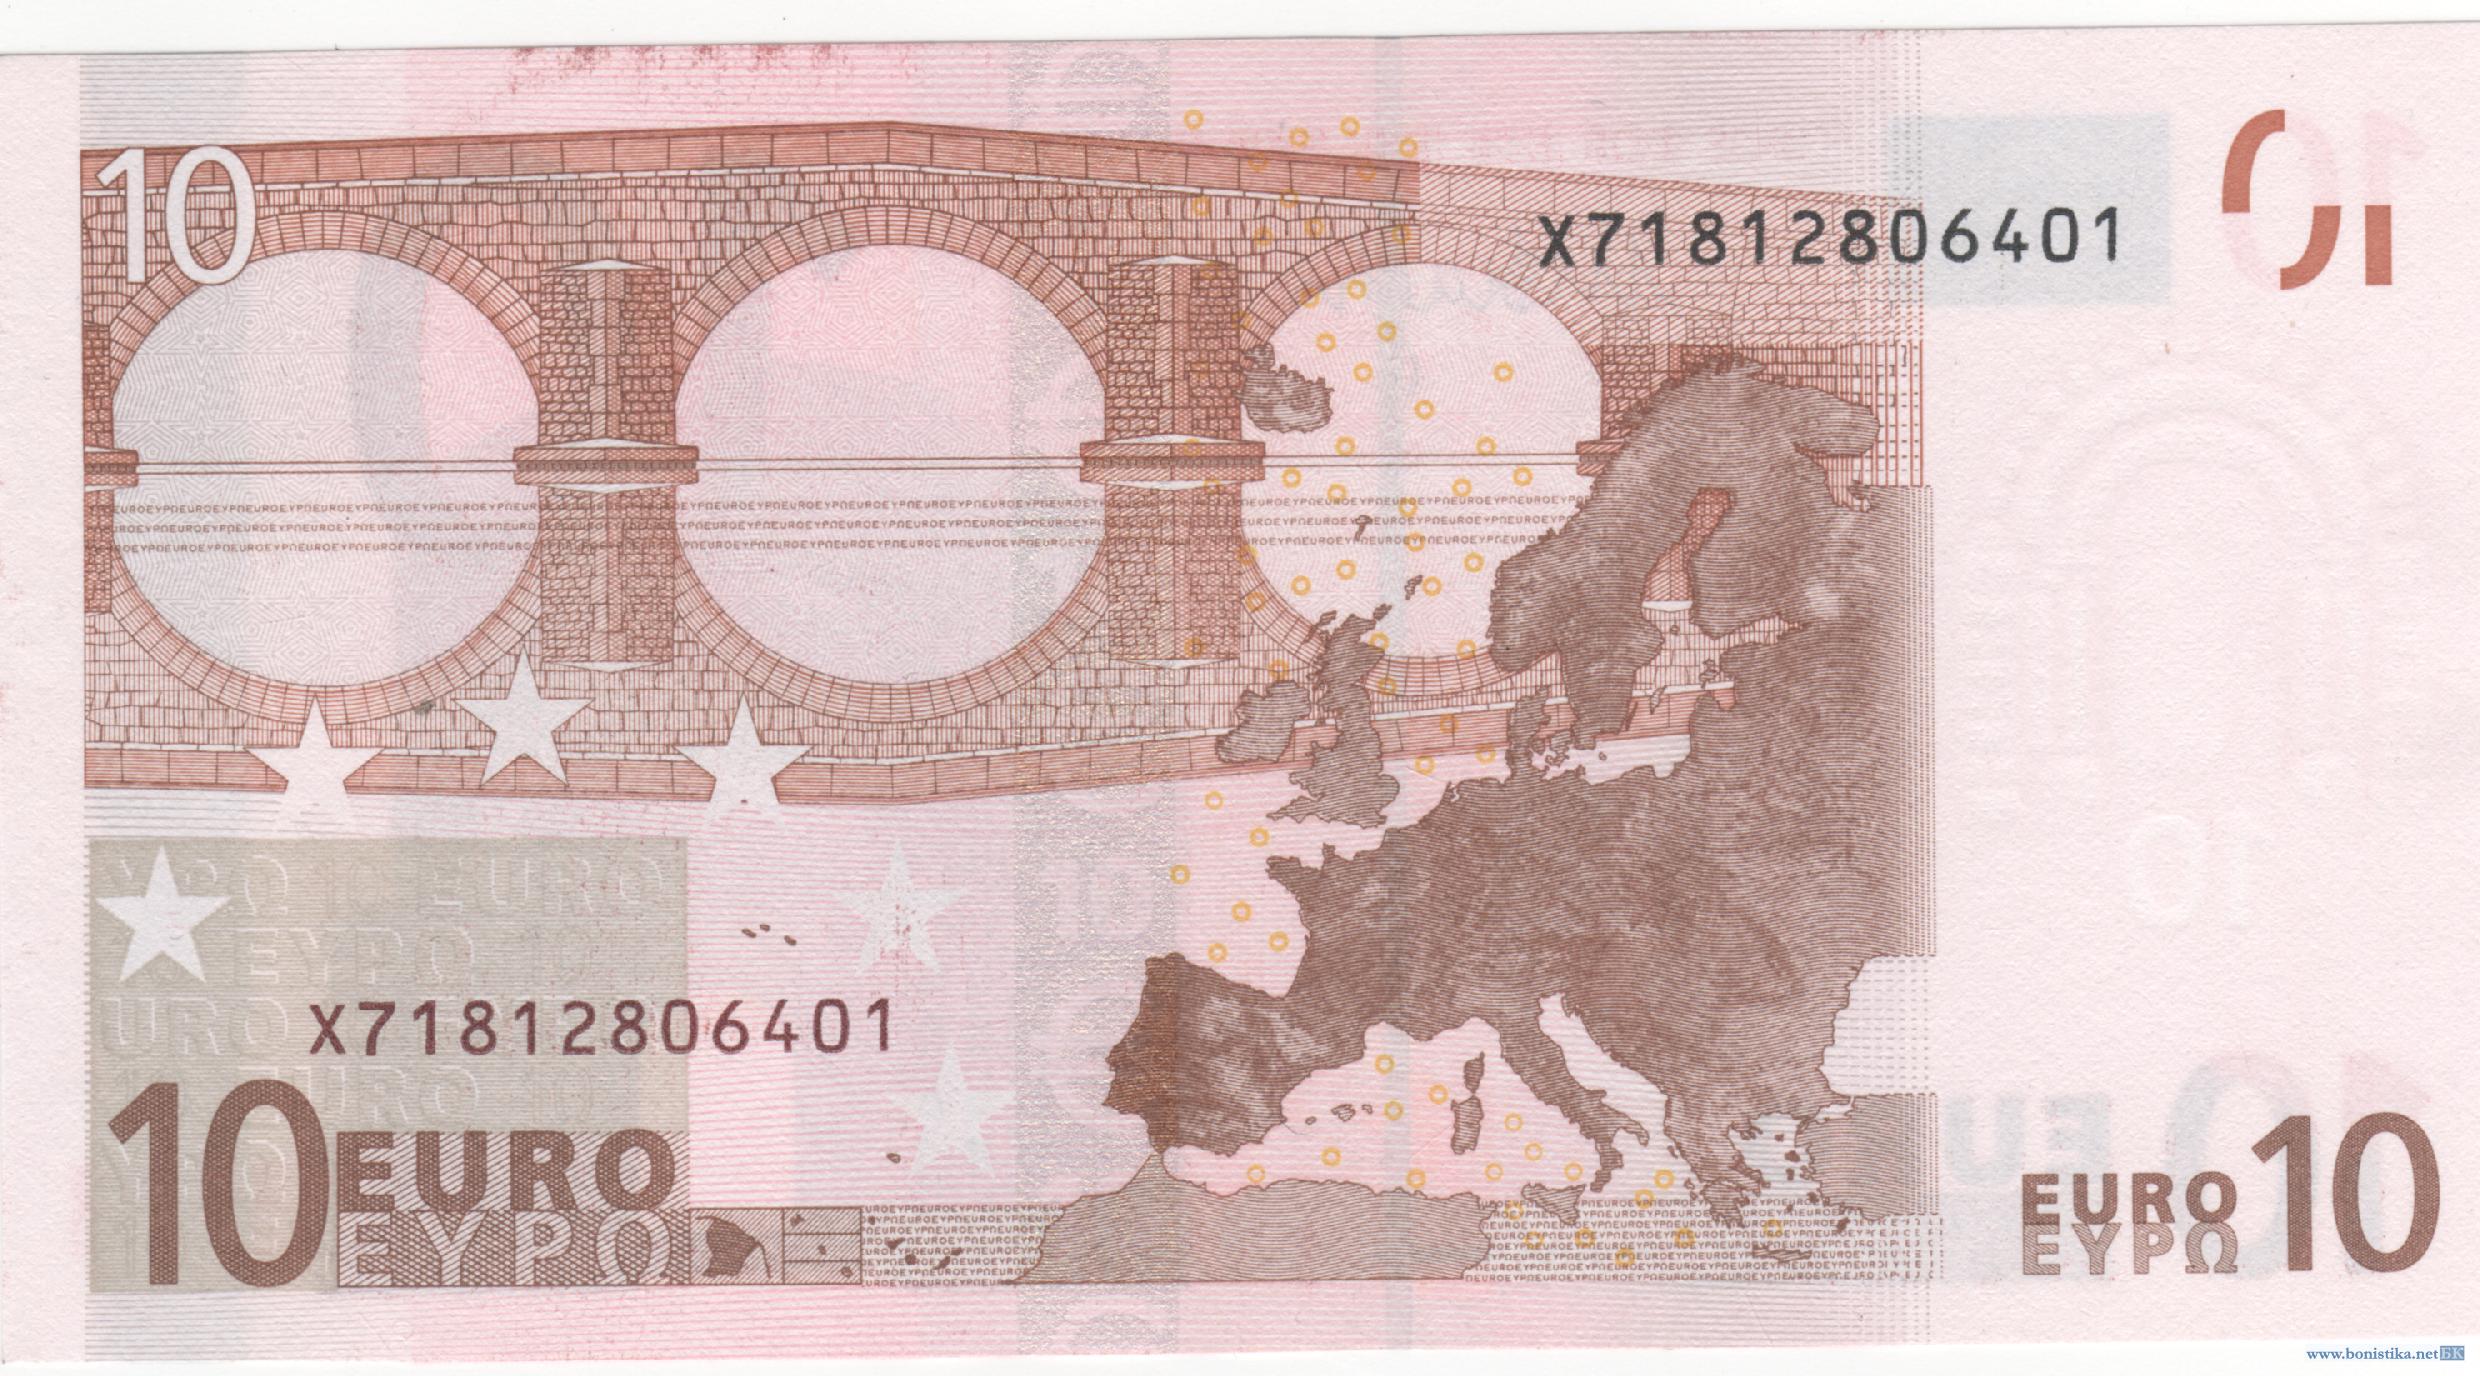 Банкнота 2002 года номиналом 10 евро: цвет – красный, архитектурный стиль – романский. Источник https://bonistika.net/